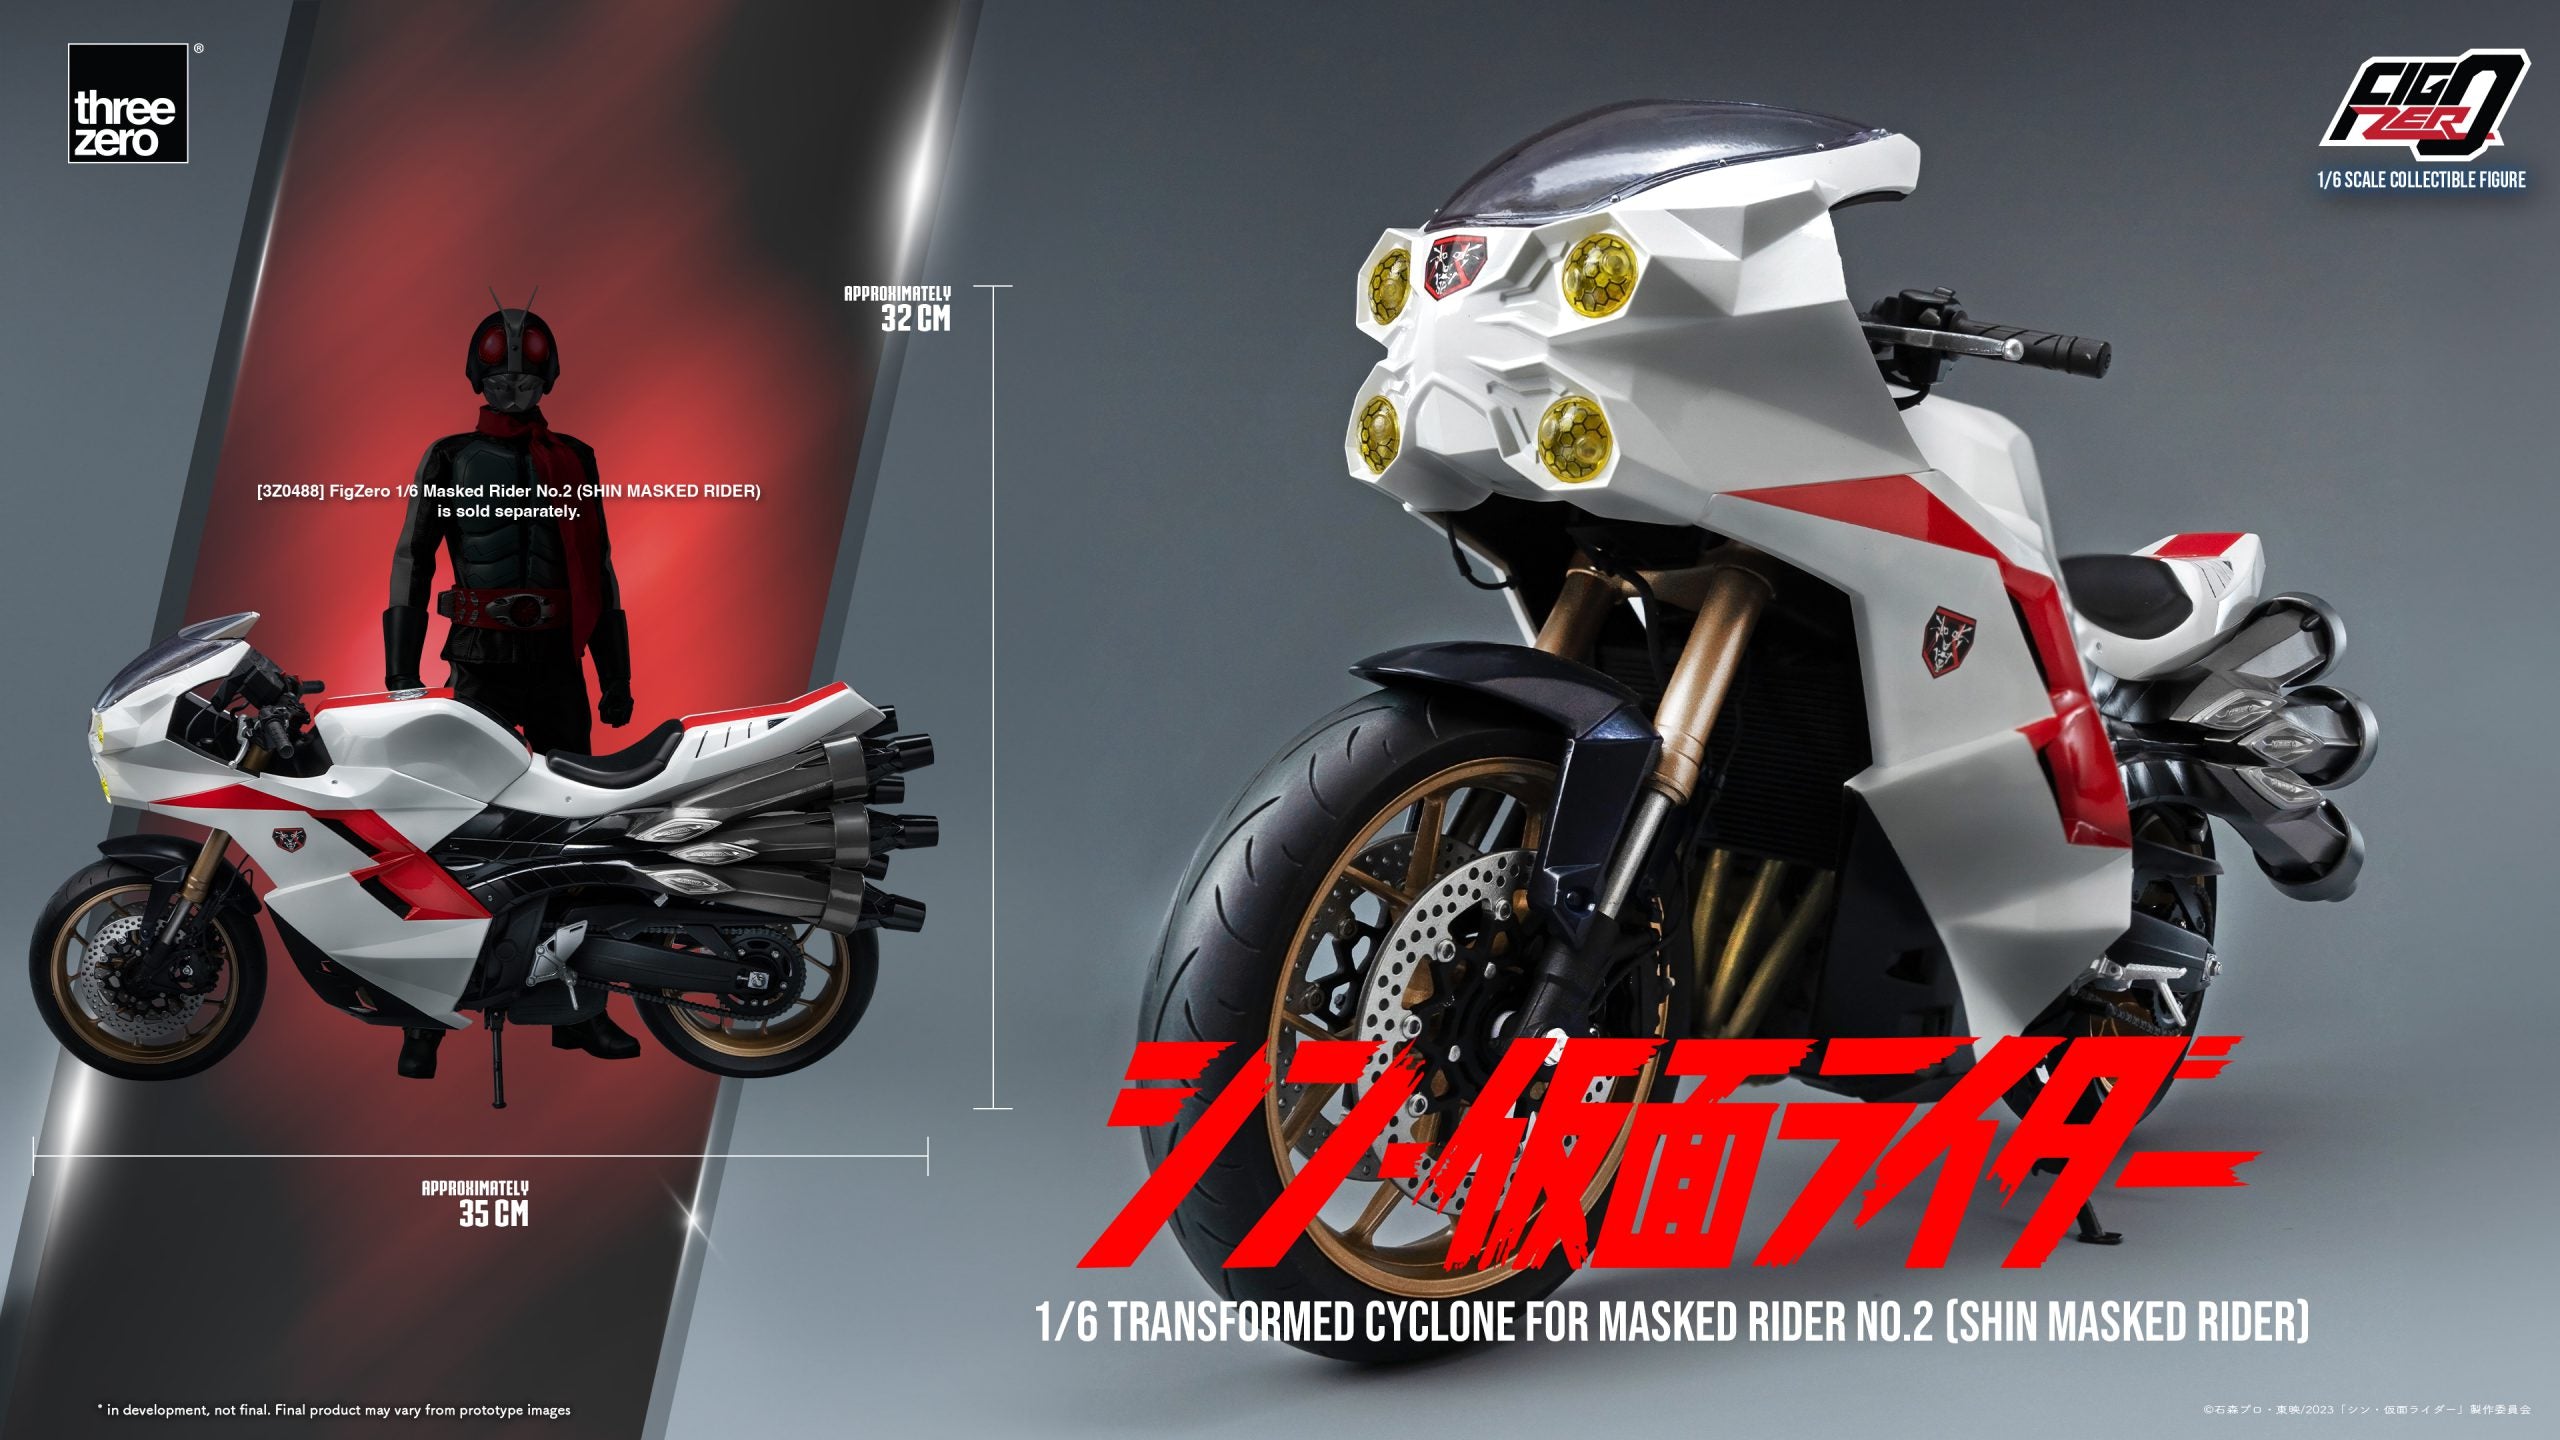 threezero - FigZero - Shin Masked Rider - Transformed Cyclone for Masked Rider No. 2 (1/6 Scale)